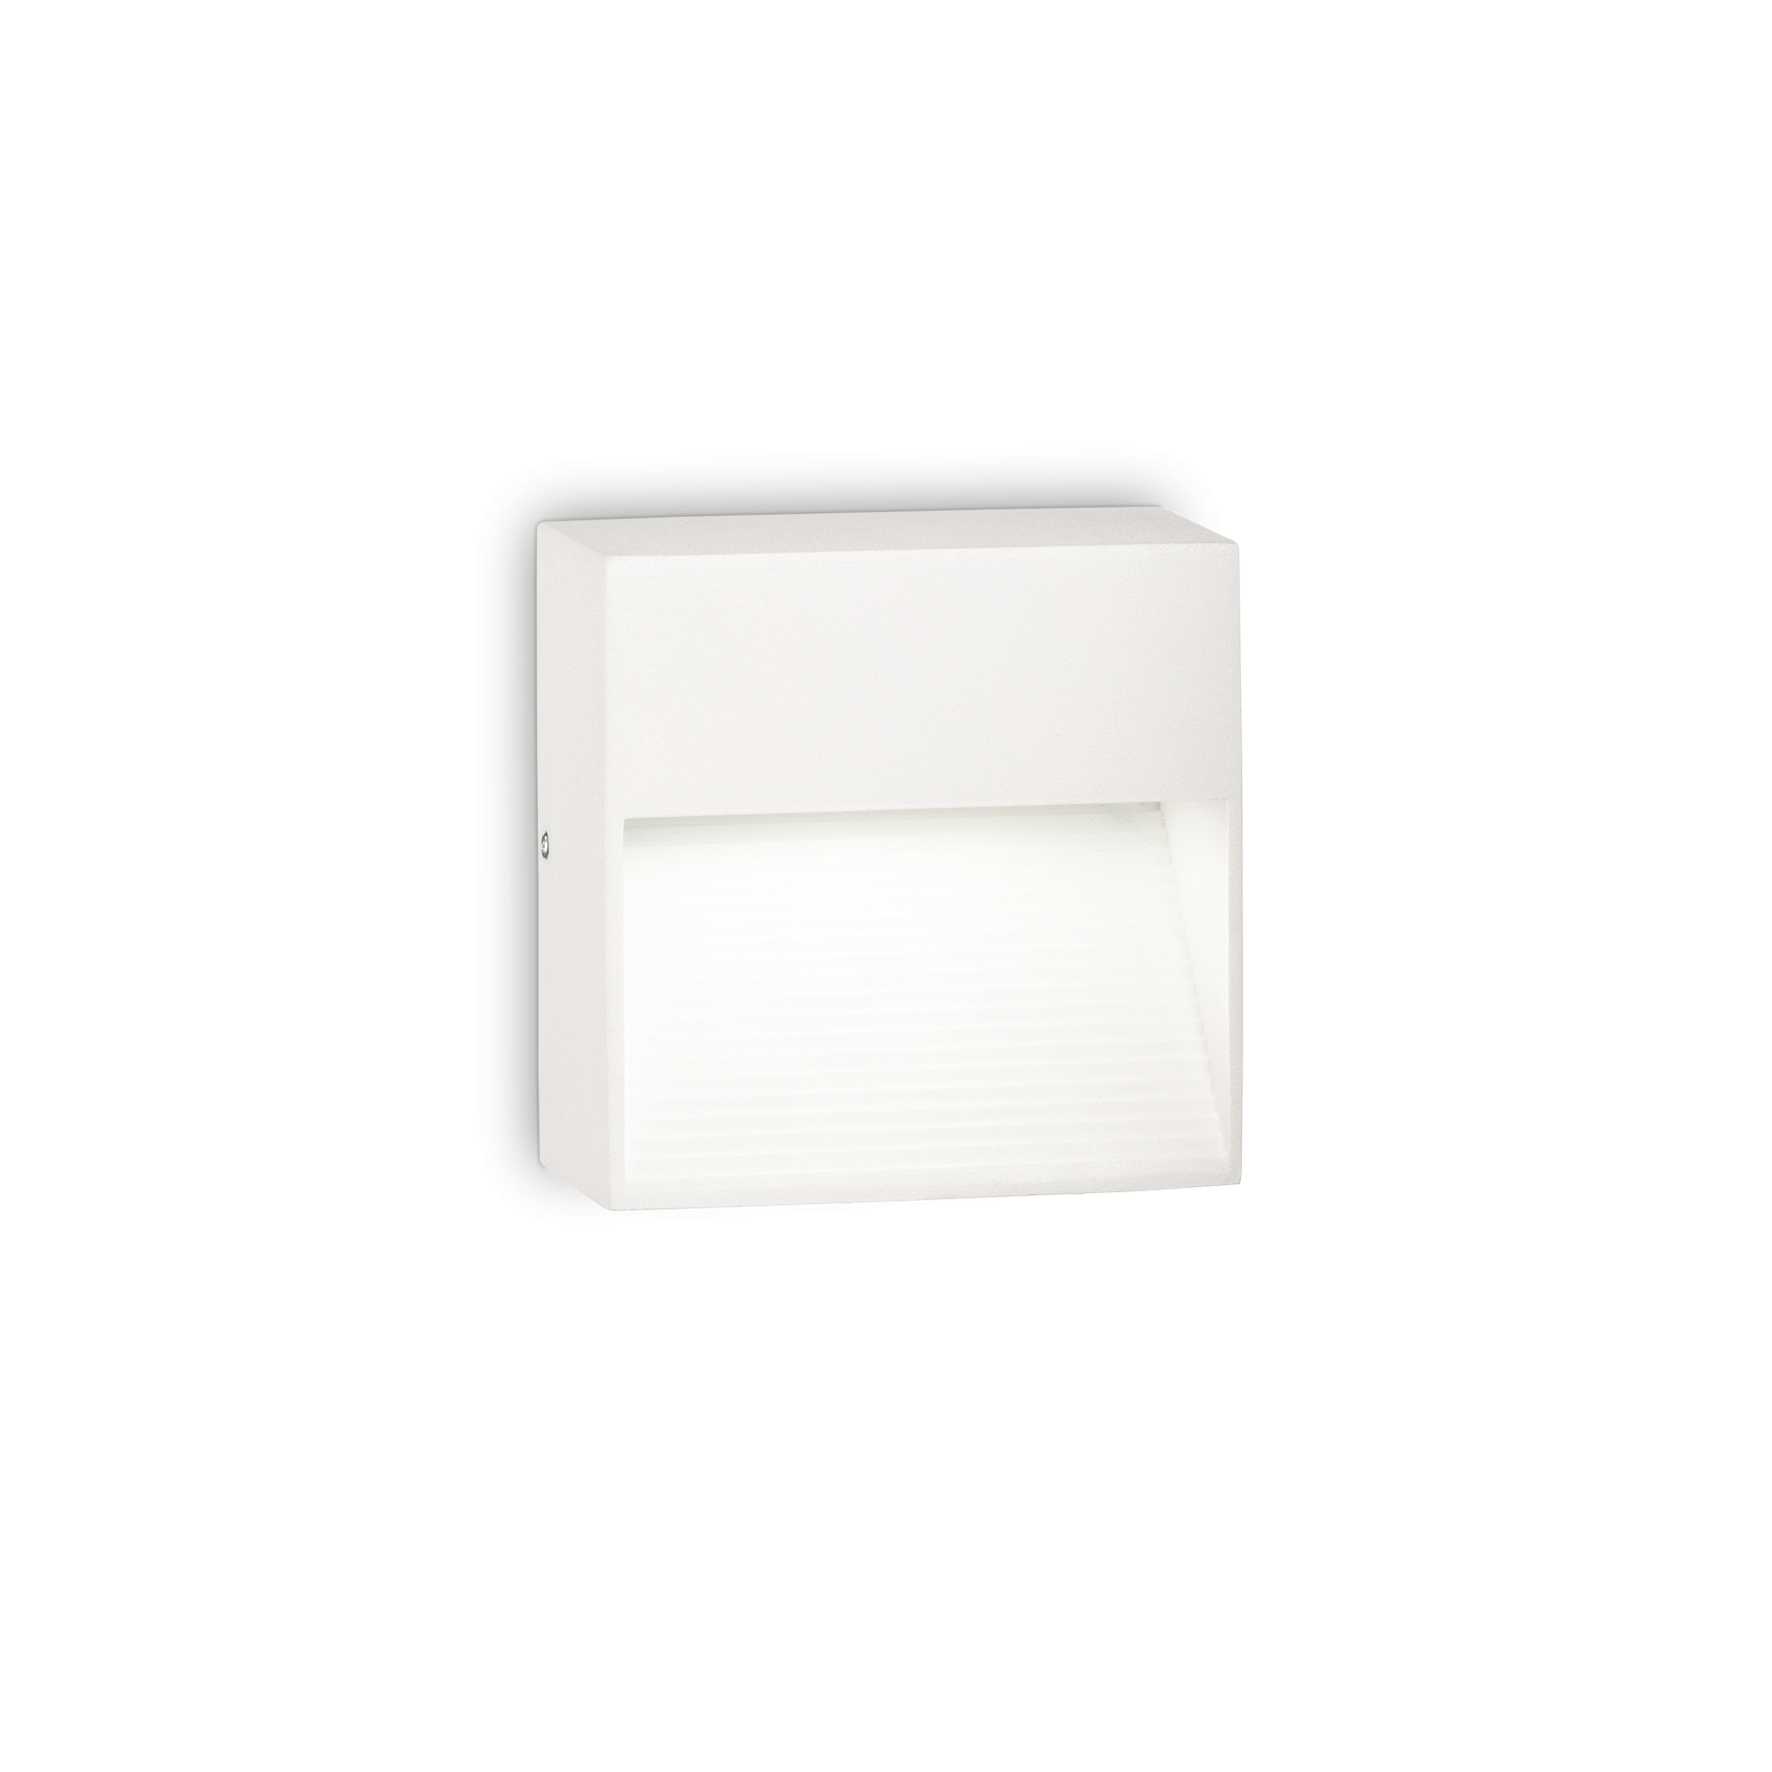 AD hotelska oprema Vanjska zidna lampa Down ap1- Bijele boje slika proizvoda